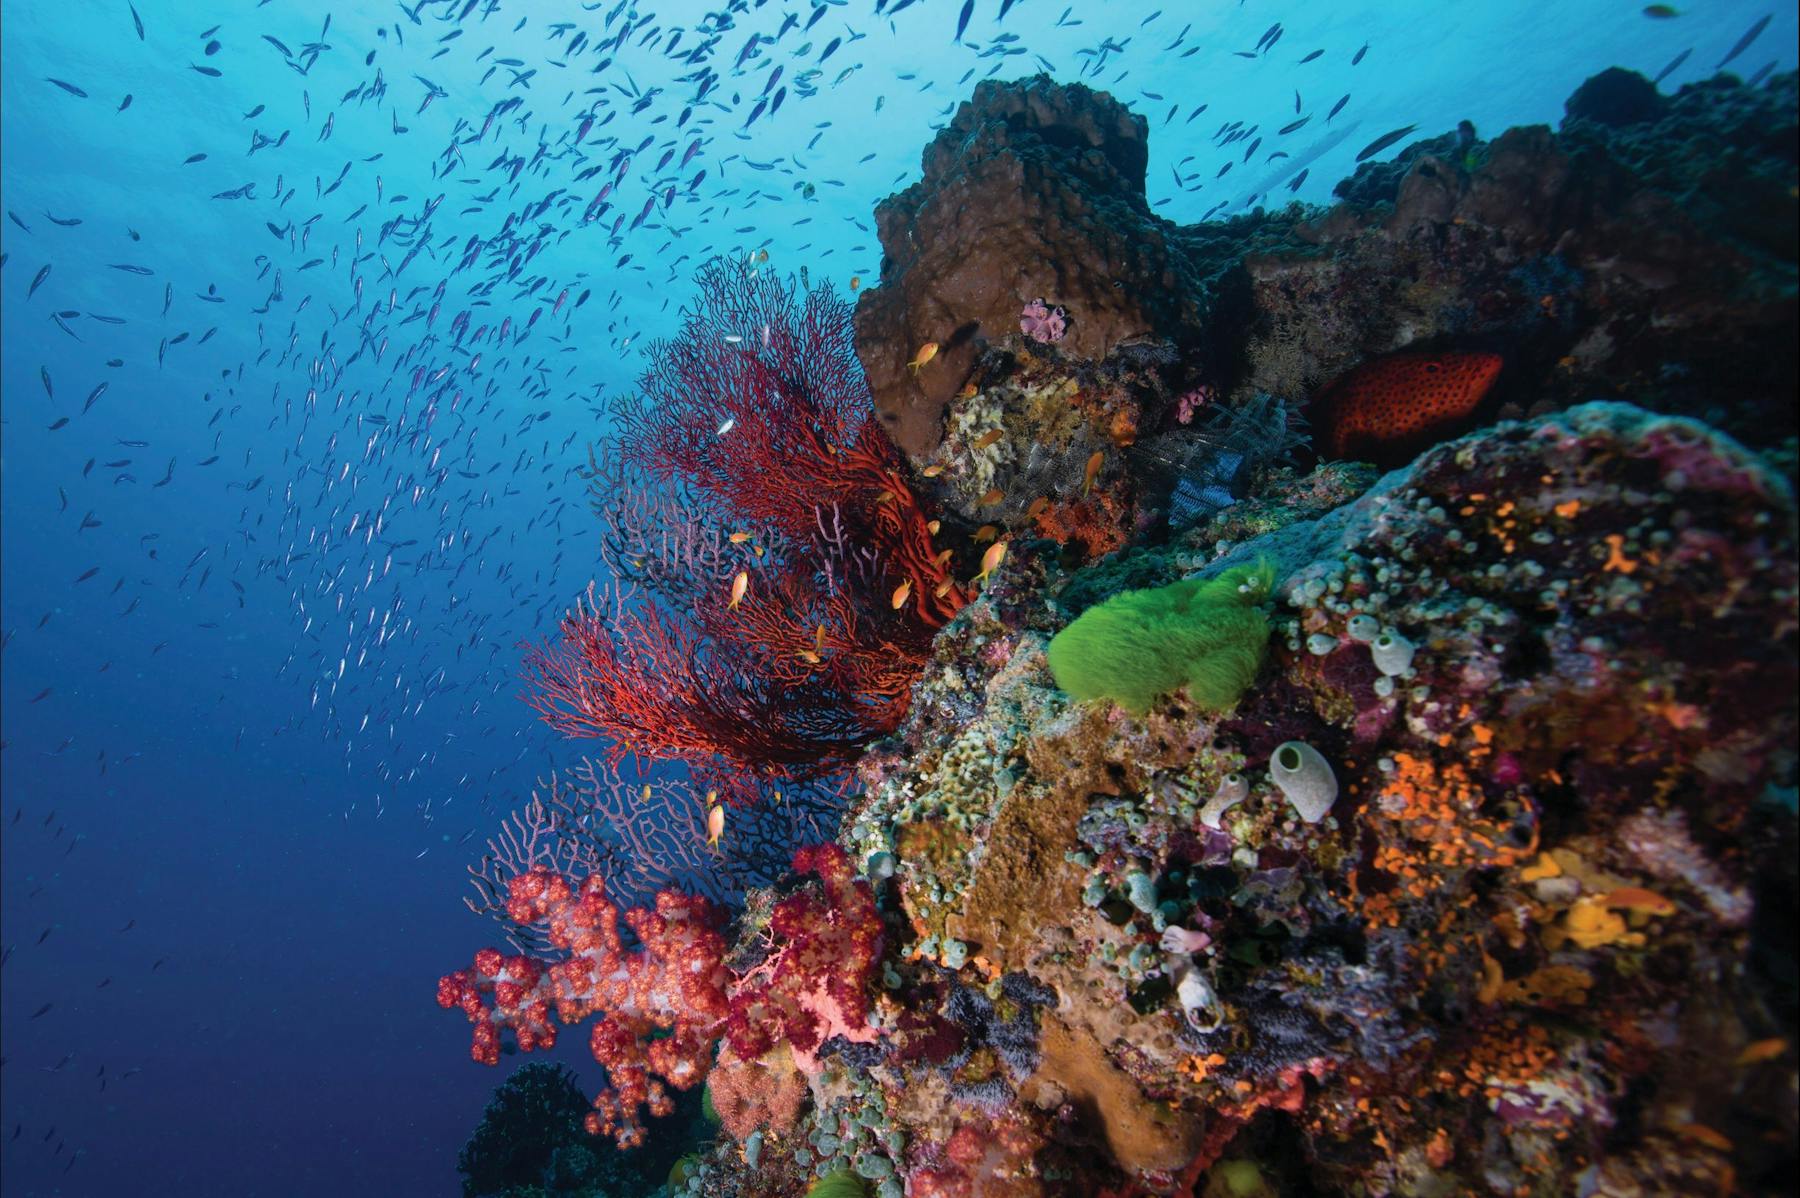 Tijou Reef